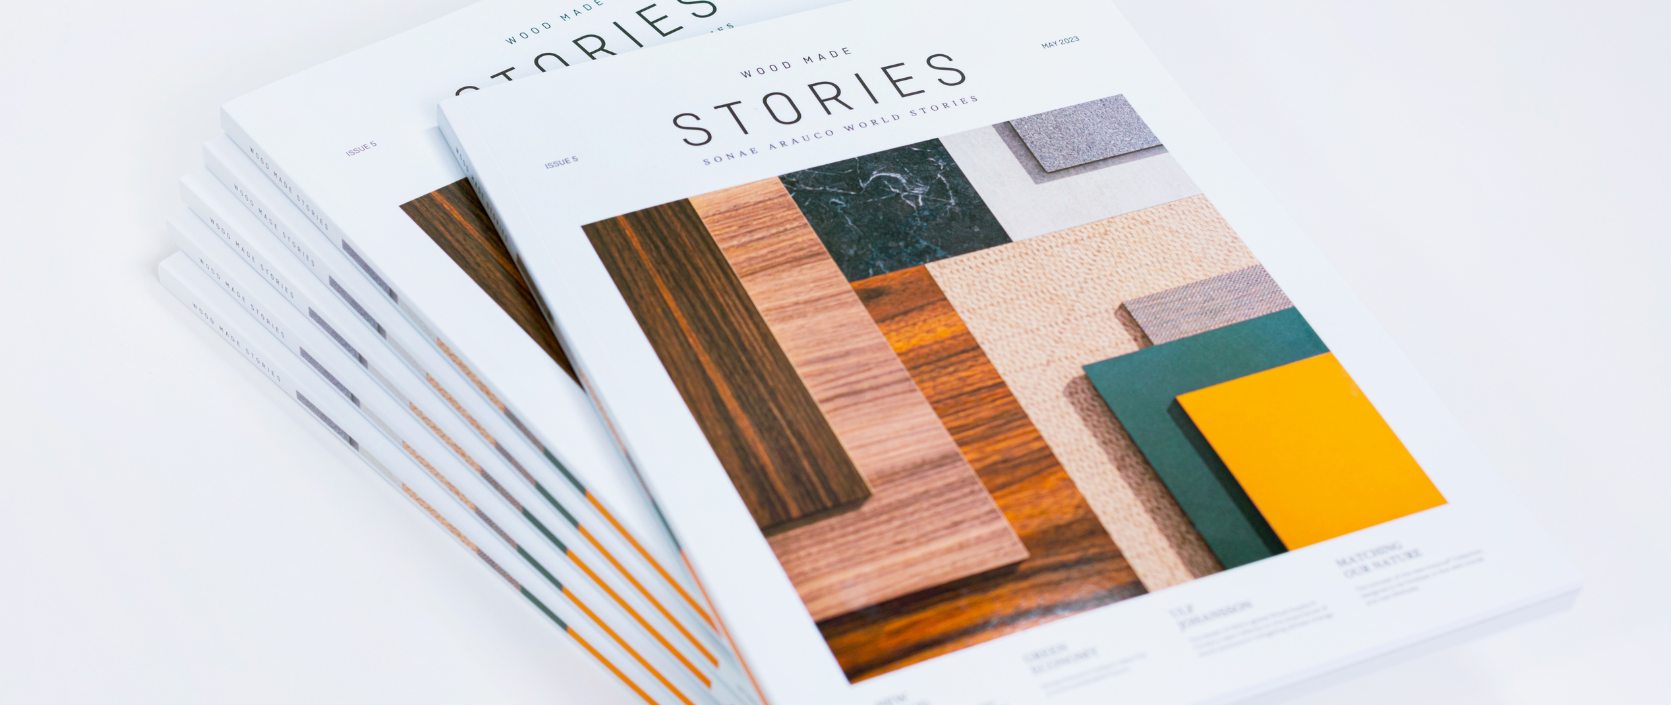 Sonae Arauco lança quinta edição da revista Wood Made Stories